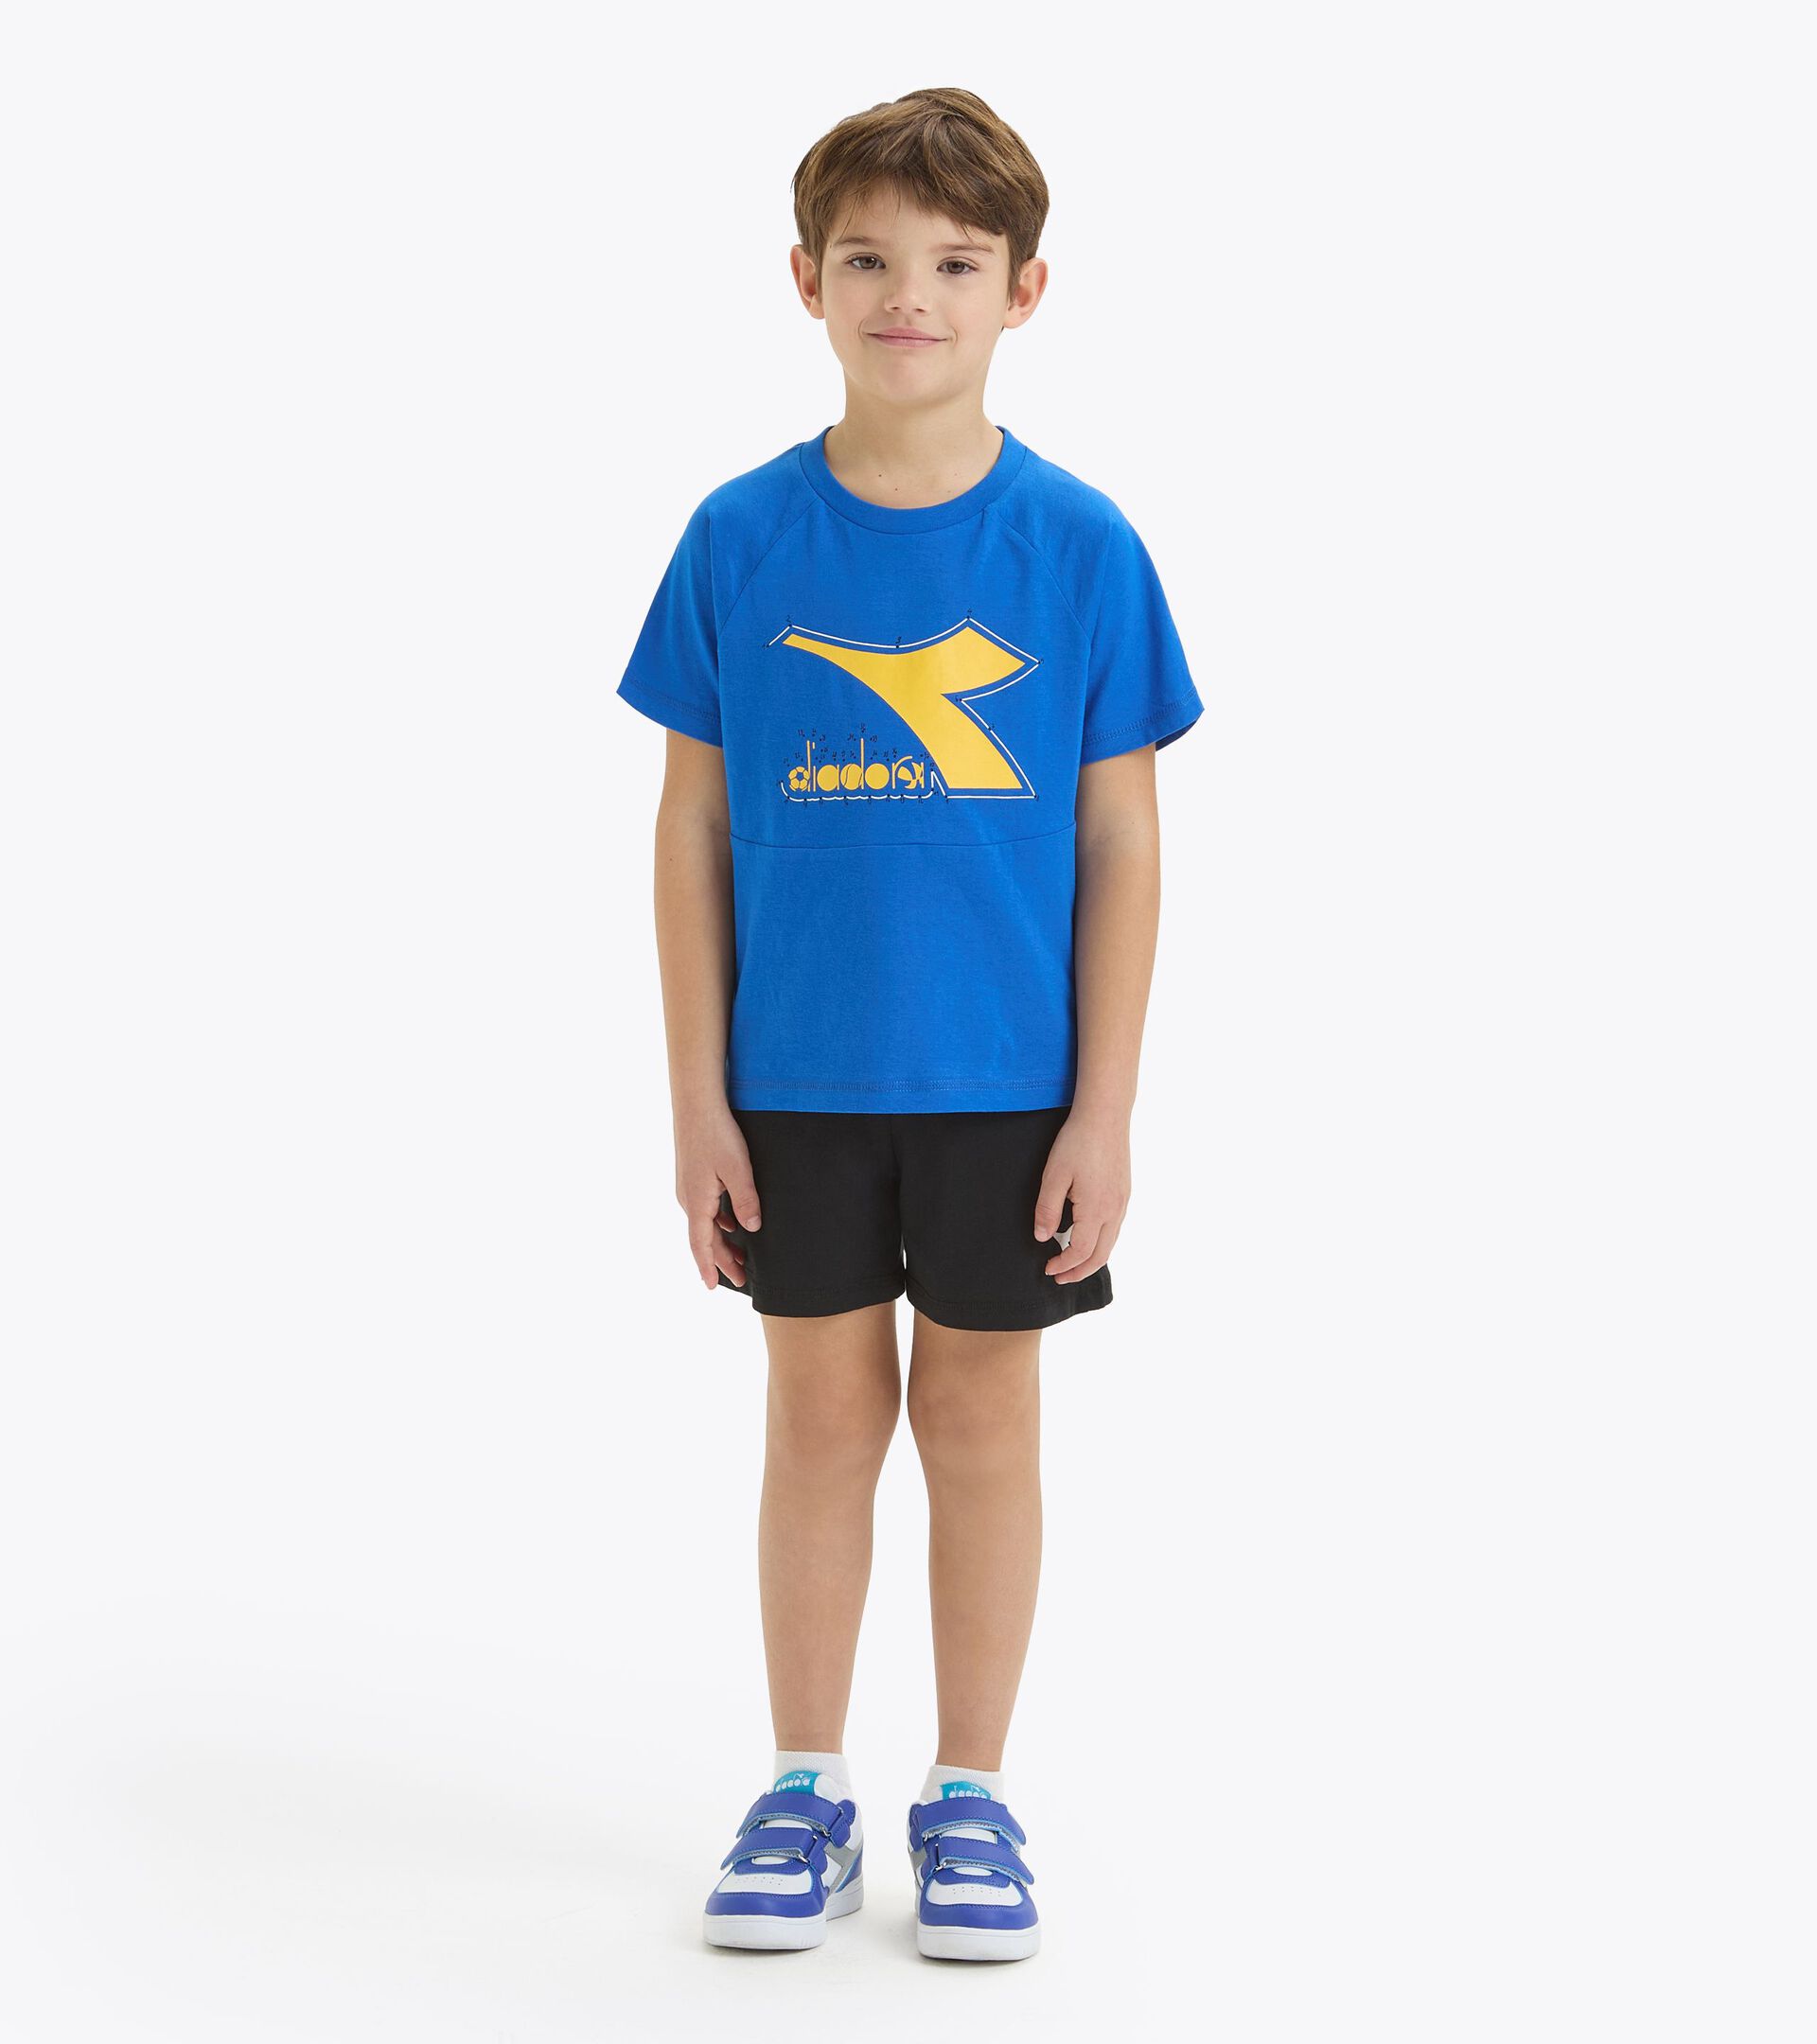 Conjunto deportivo - Camiseta y pantalones cortos - Niños y adolescentes
 JB. SET SS RIDDLE AZUL PRINCESA - Diadora